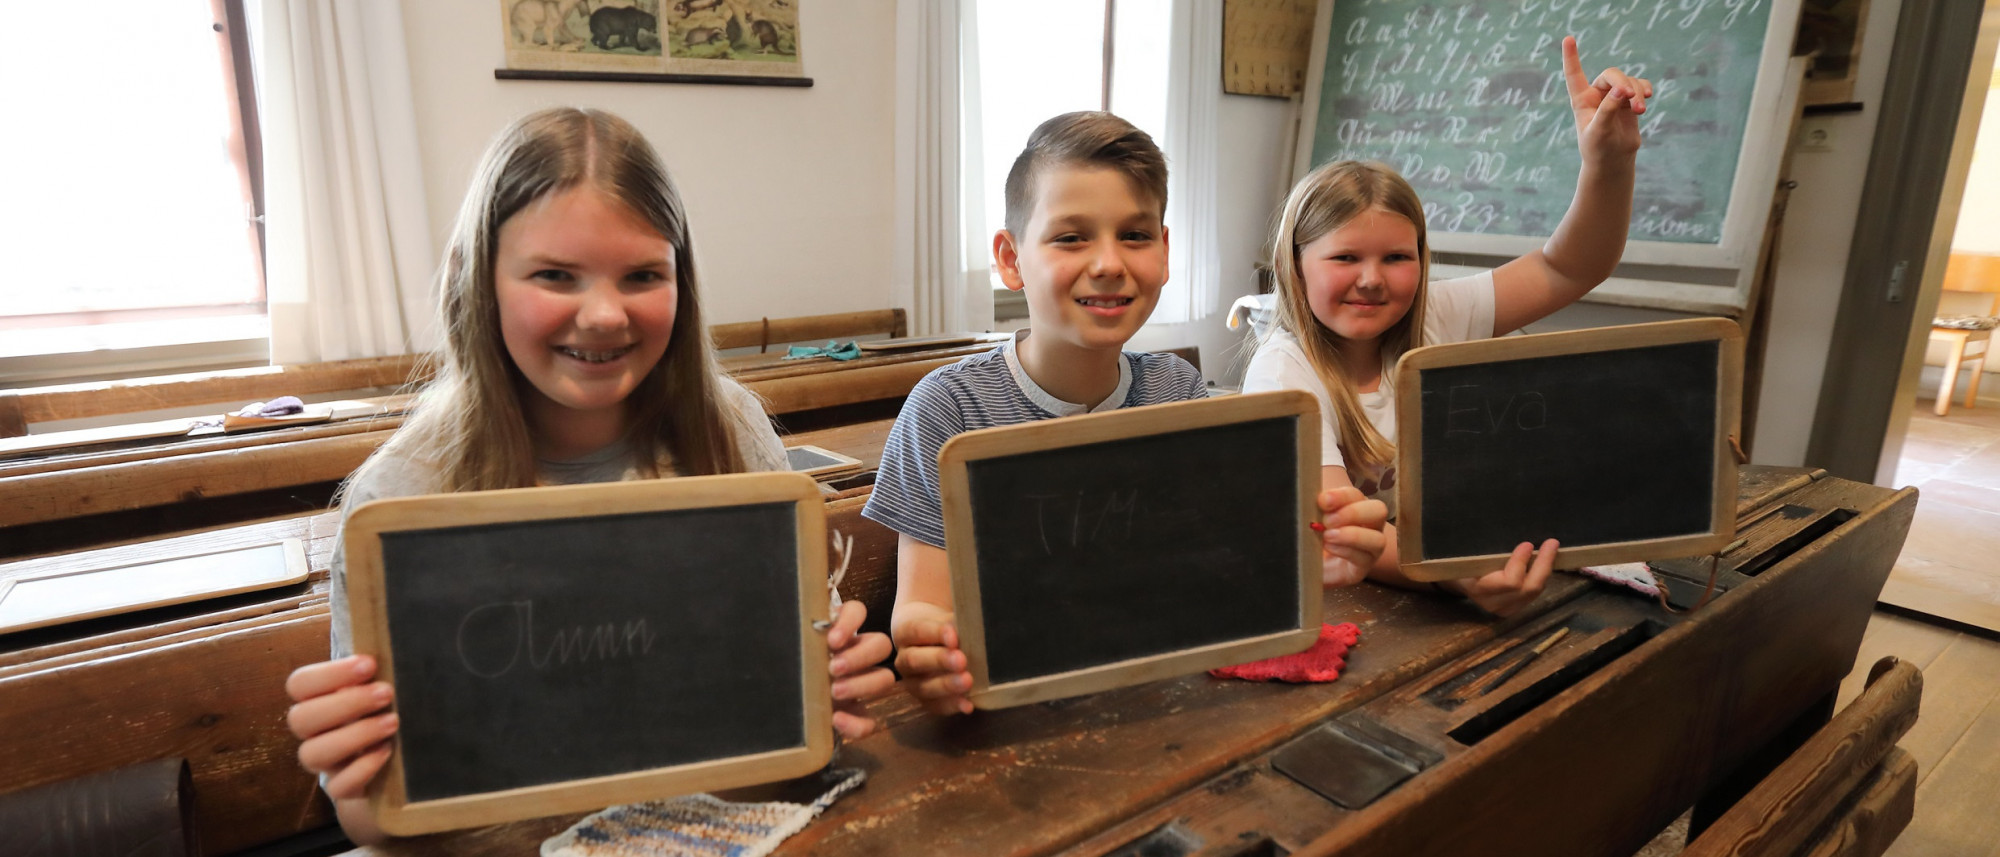 Drei Kinder sitzen auf einer Schulbank in einem alten Klassenzimmer. Sie halten jeweils eine Schiefertafel hoch, auf die sie mit Griffel ihre Namen geschrieben haben. Das Mädchen rechts außen meldet sich außerdem.